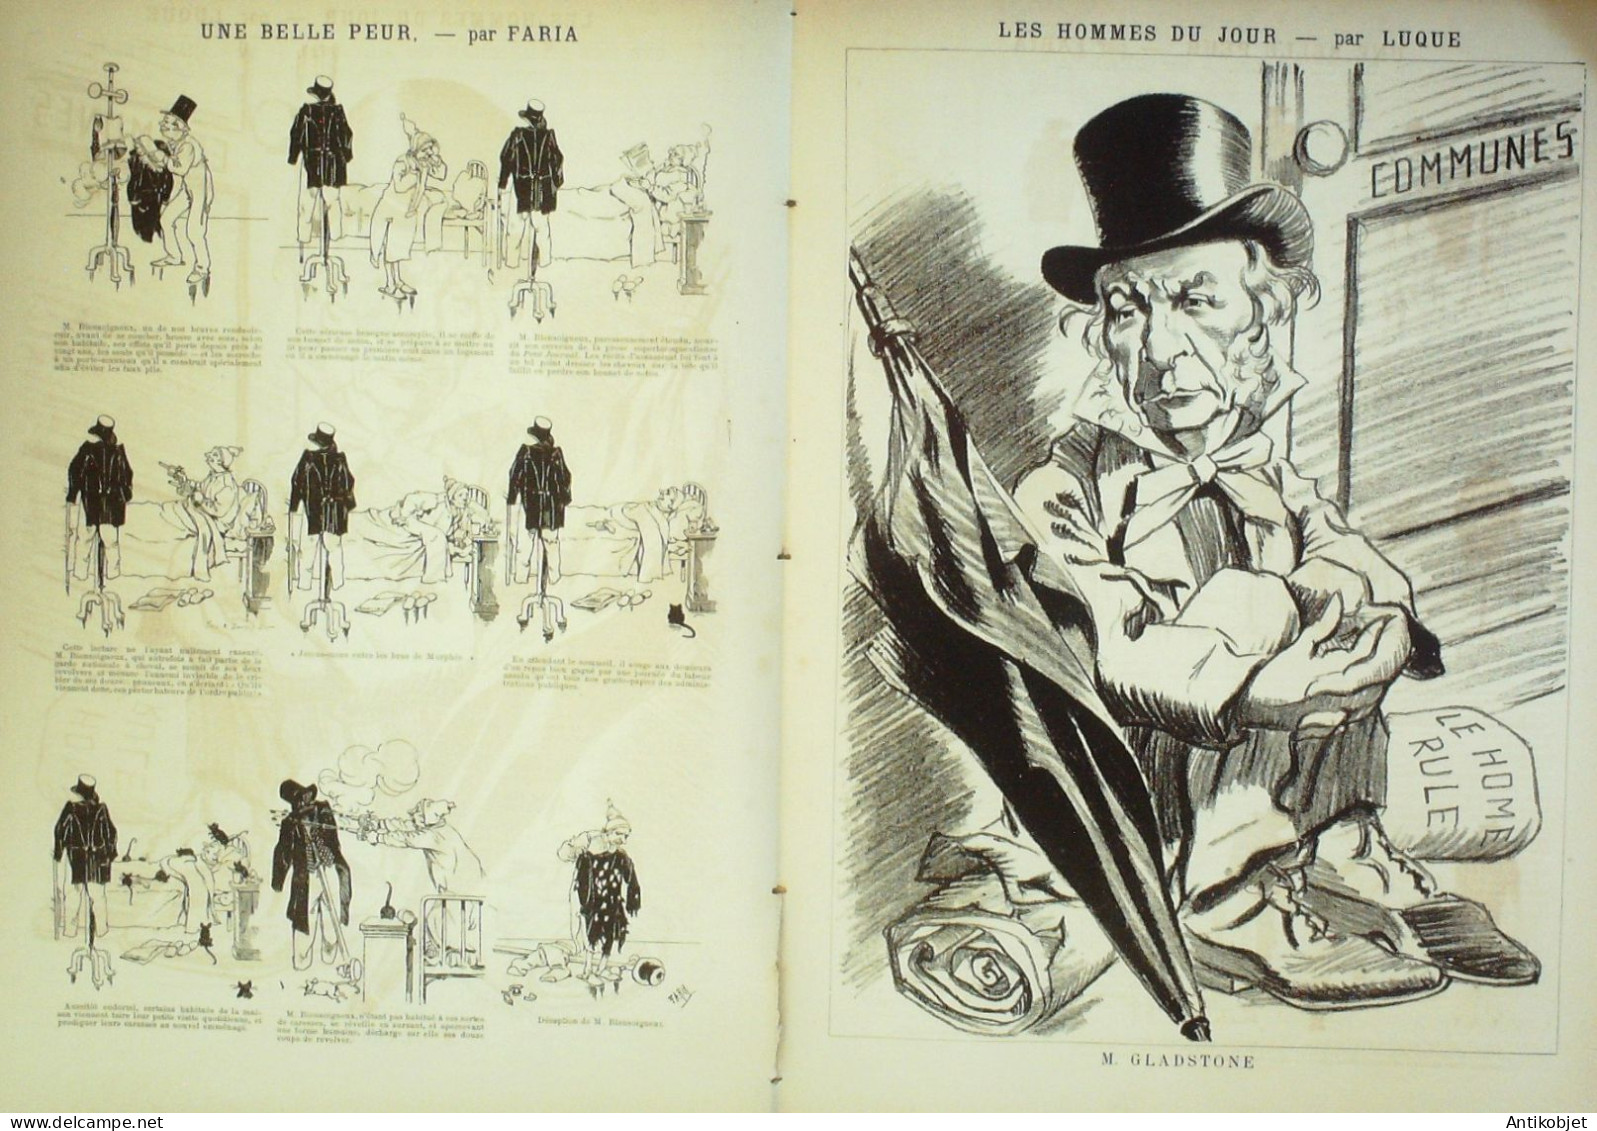 La Caricature 1886 N°339 Dîner Plein Air Sorel Mélassier Caran D'Ache Faria Gladstone Par Luque - Magazines - Before 1900